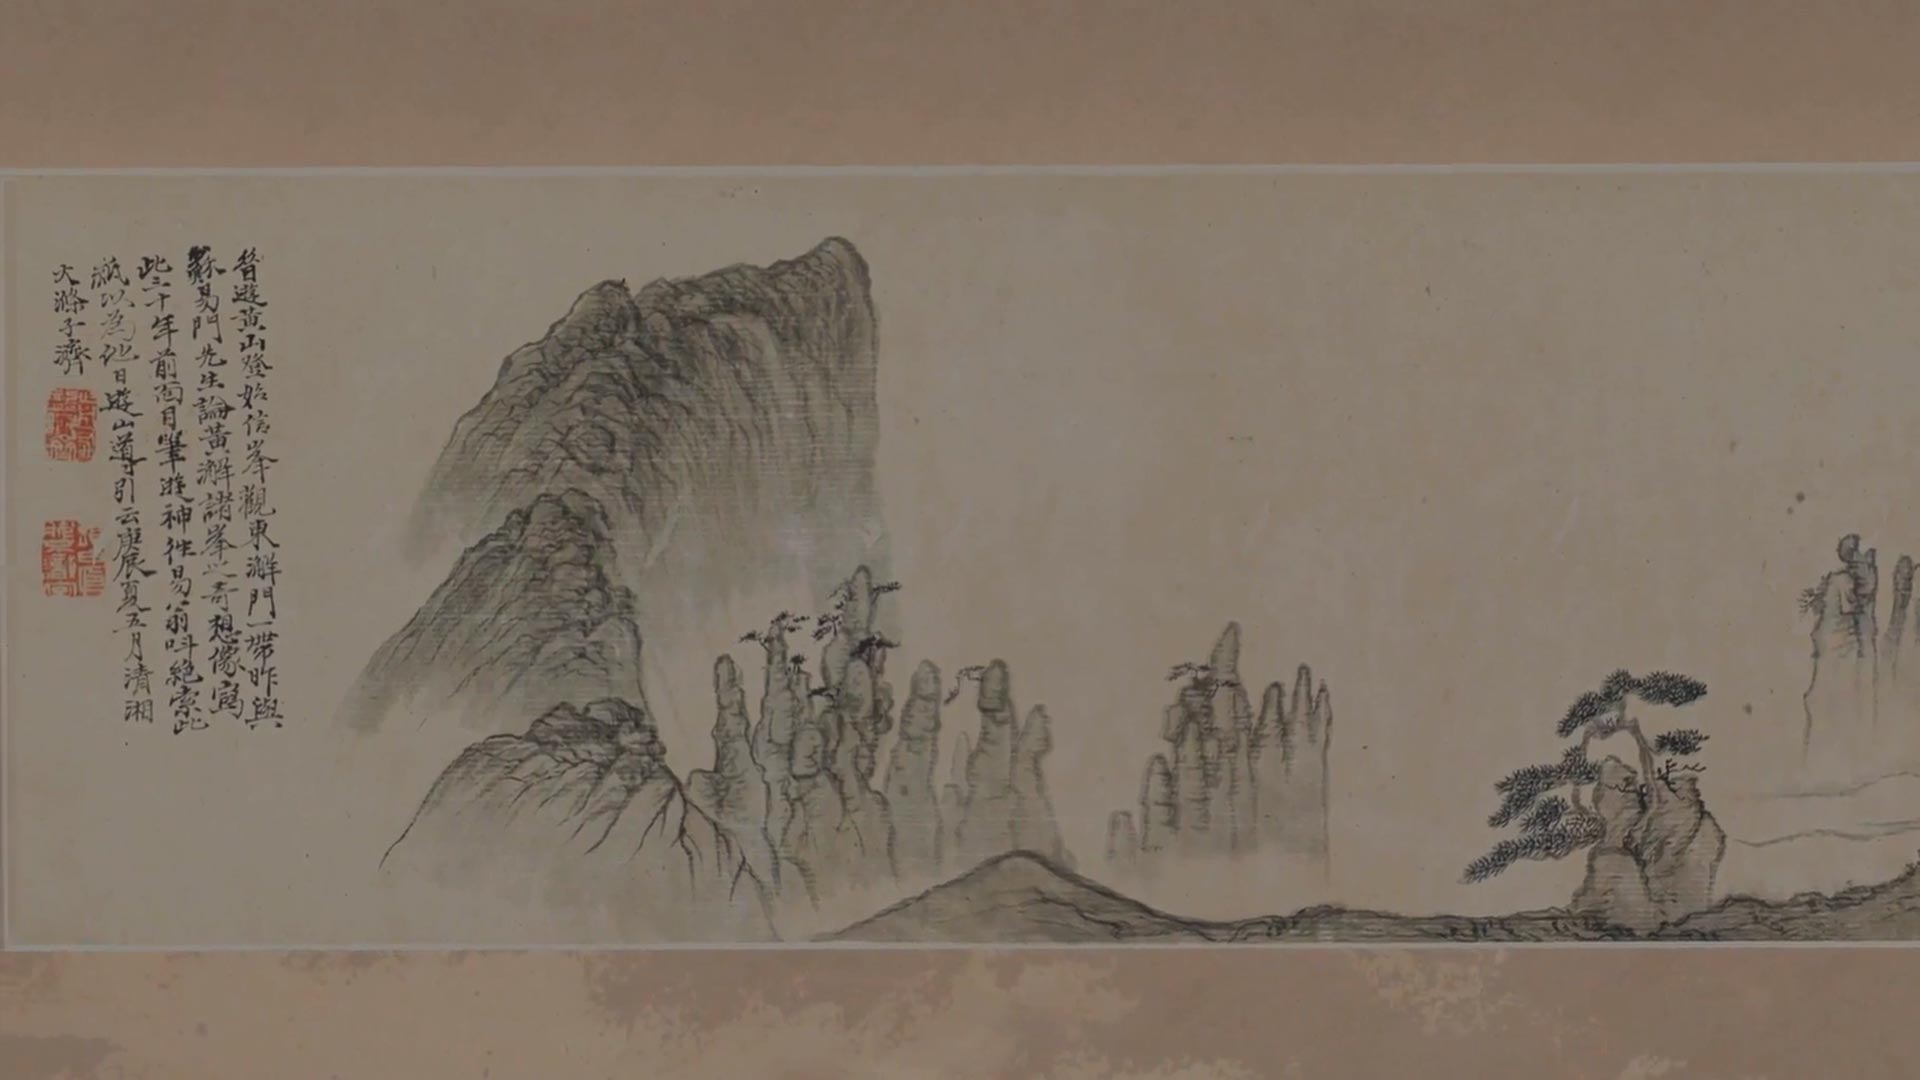 呼吸美学－中国古画赏析: 灵山仙境(2021年)